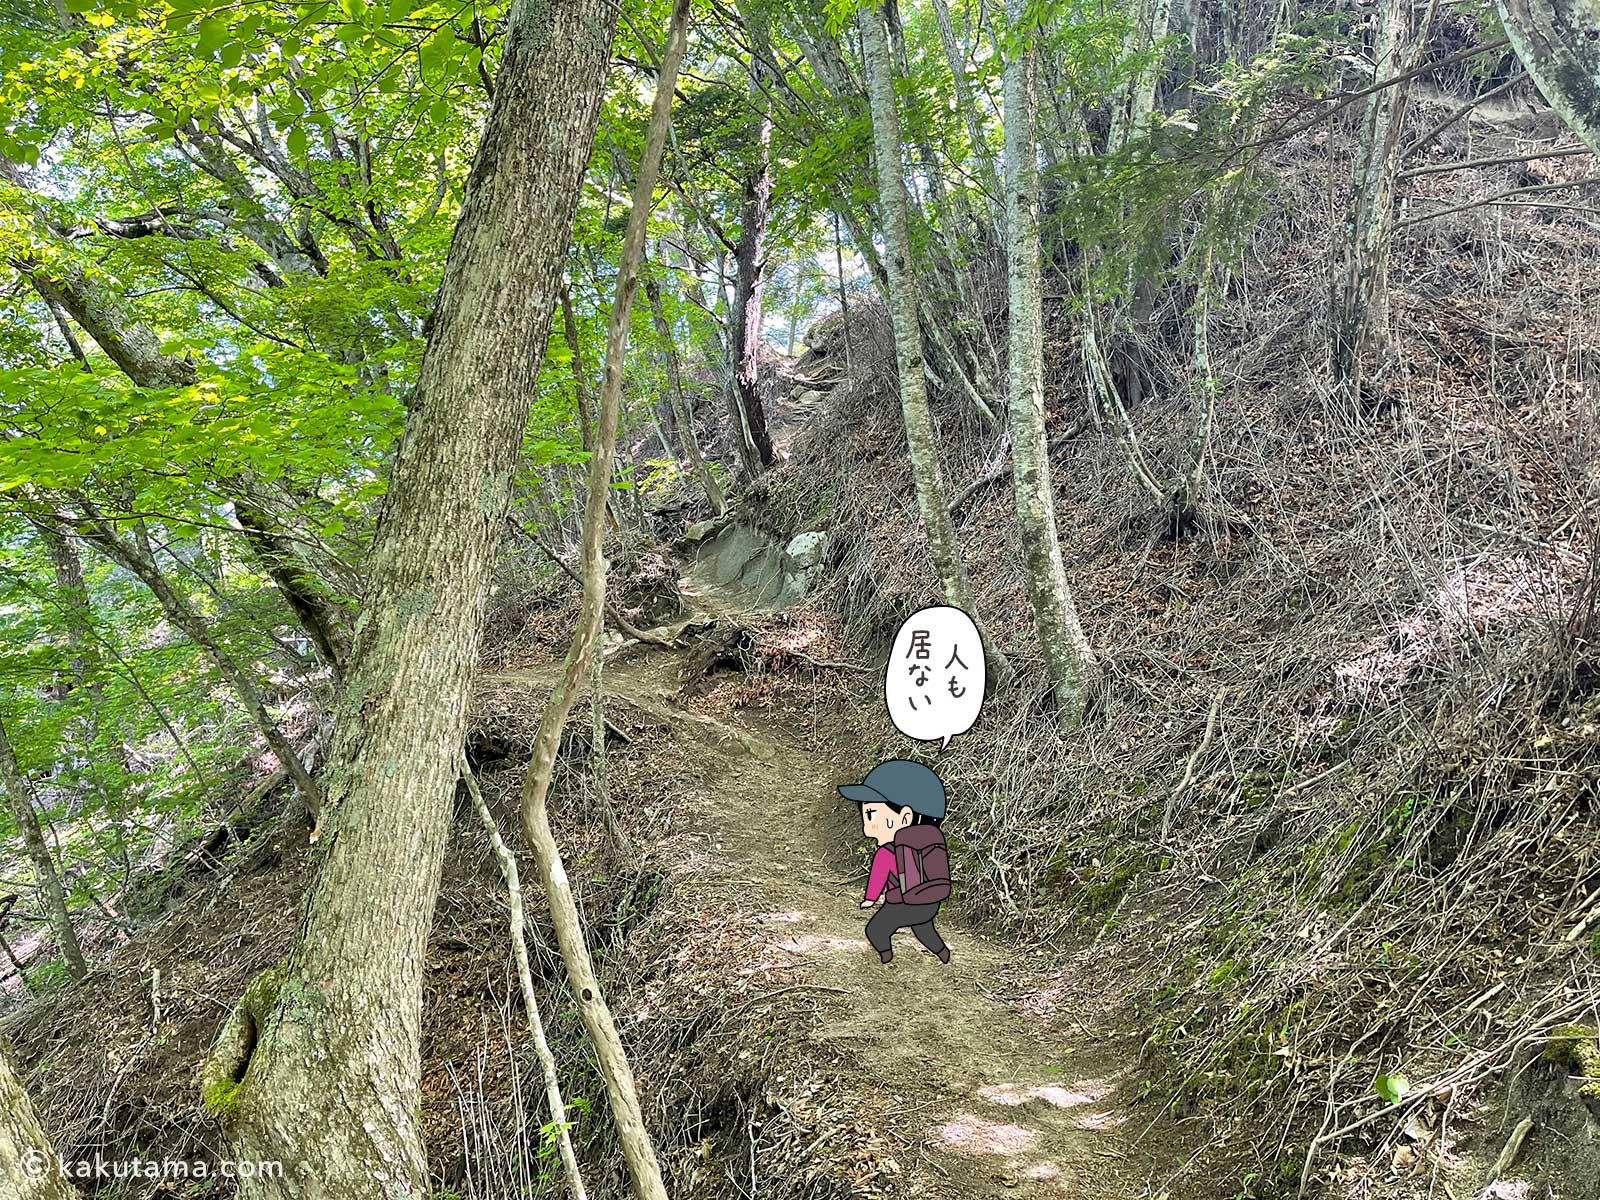 丸川荘へ向かって登る登山者のイラスト3